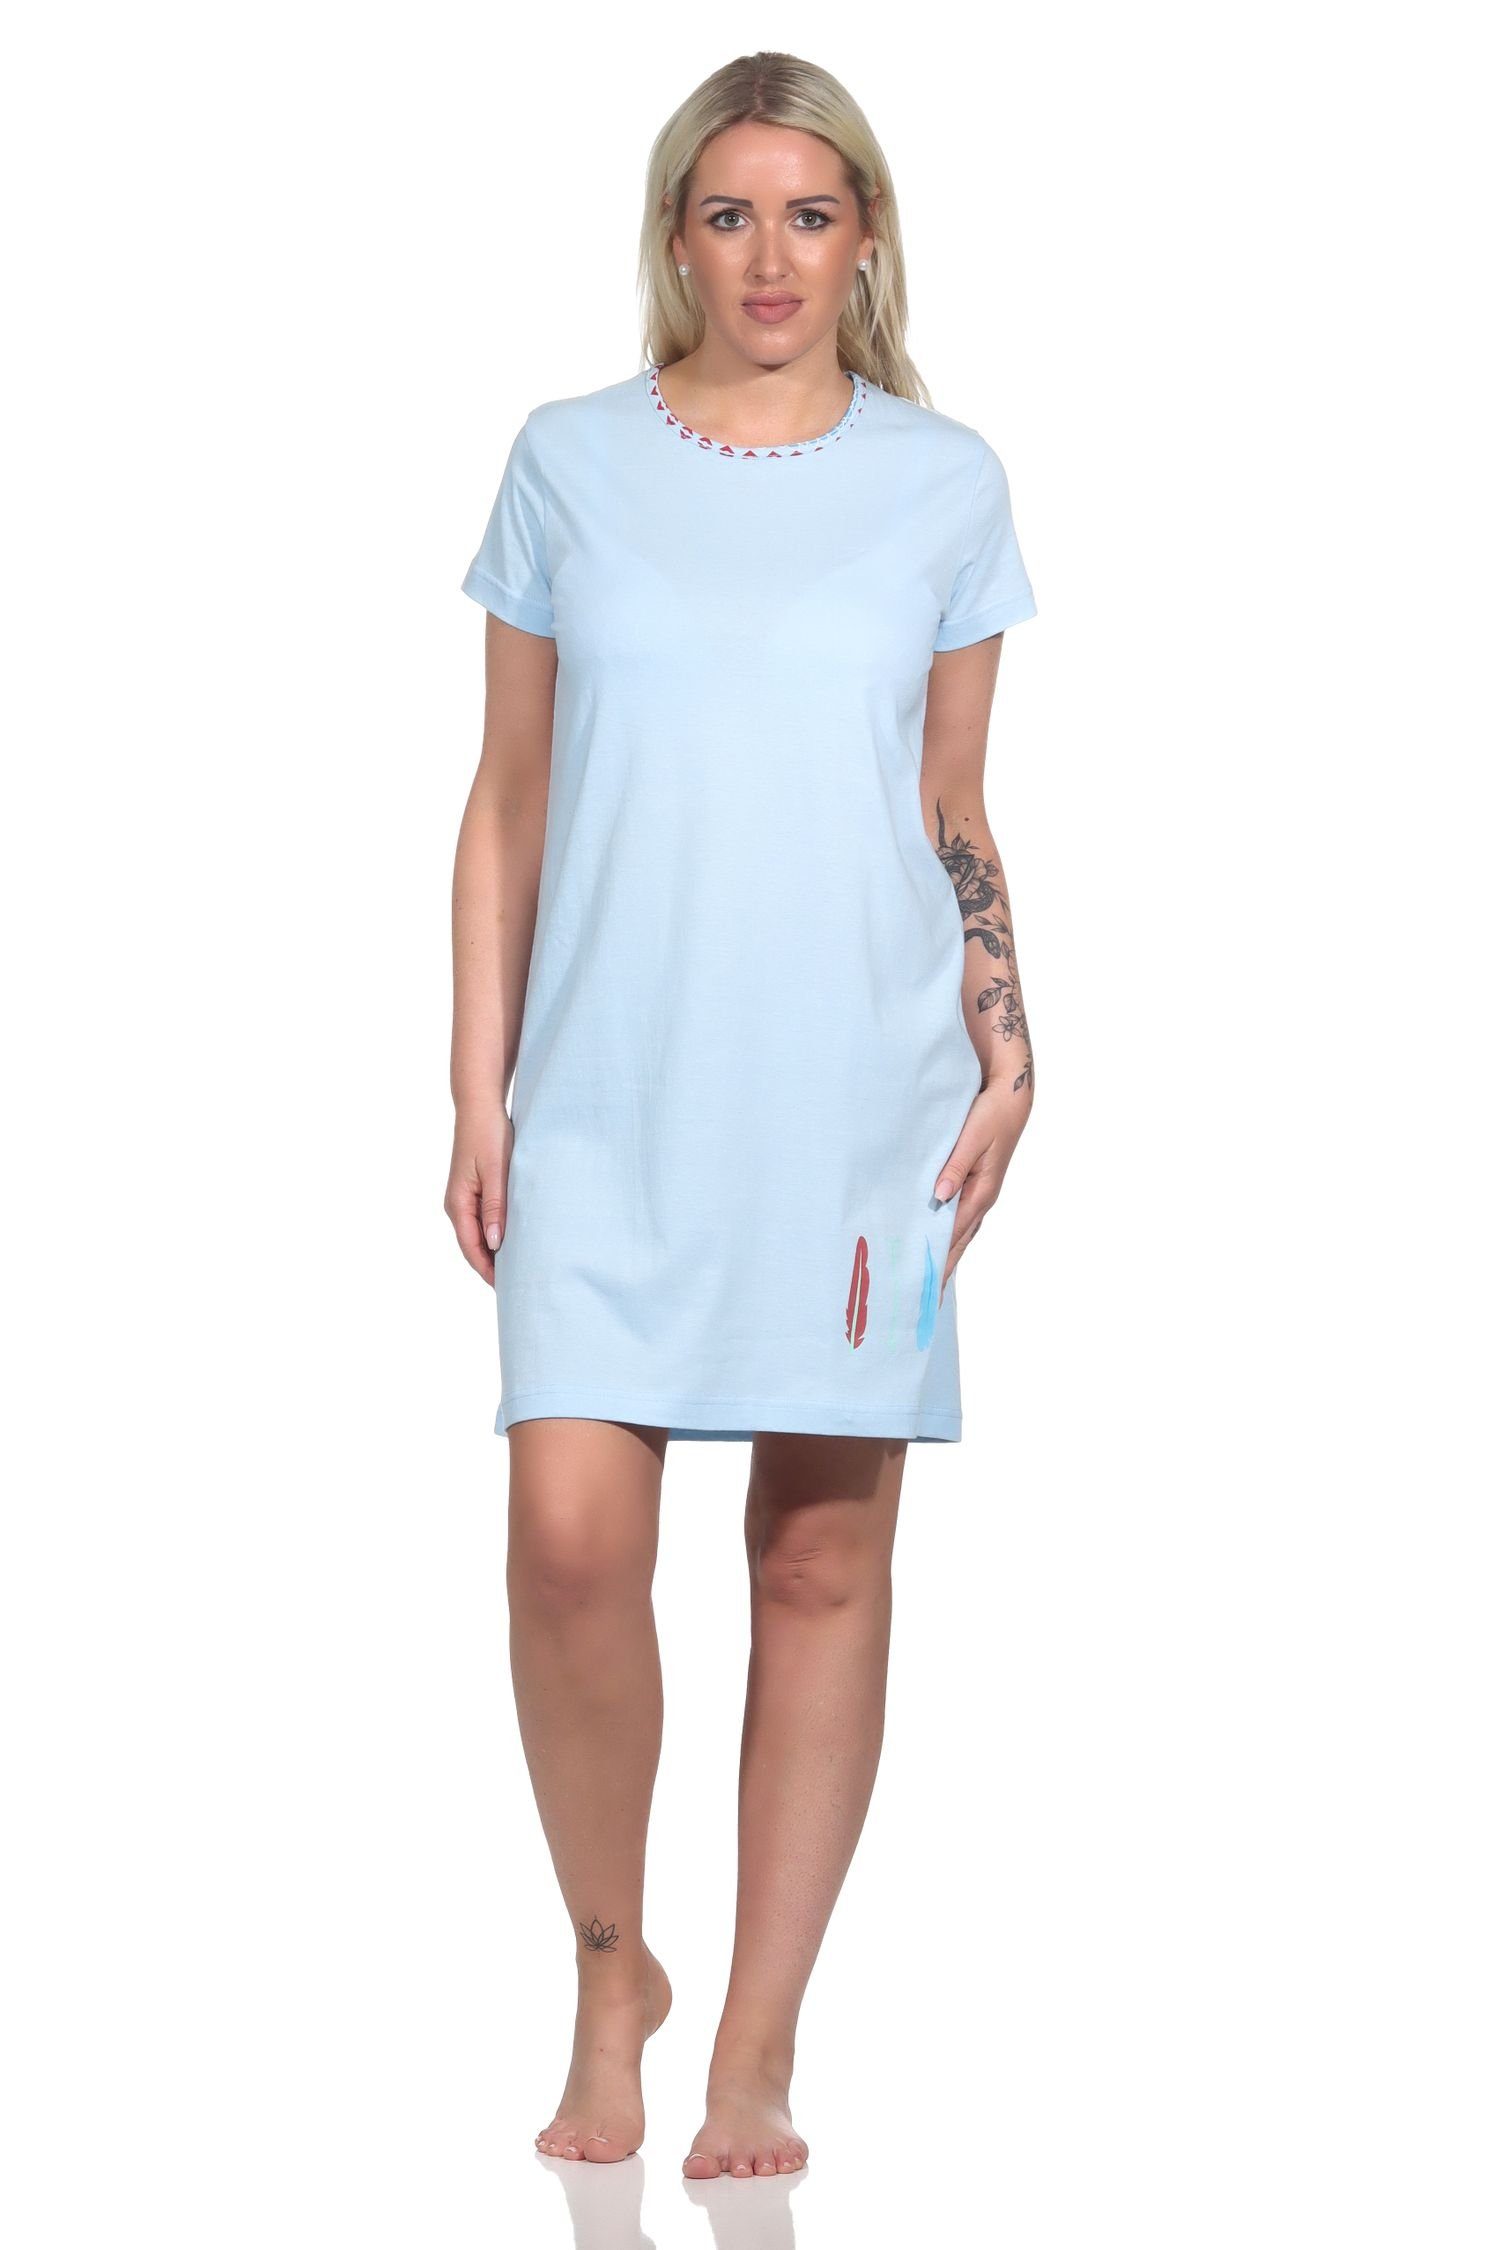 RELAX by Normann Nachthemd Damen Nachthemd halbarm, Bigshirt mit Feder- und Pfeil-Motiv blau